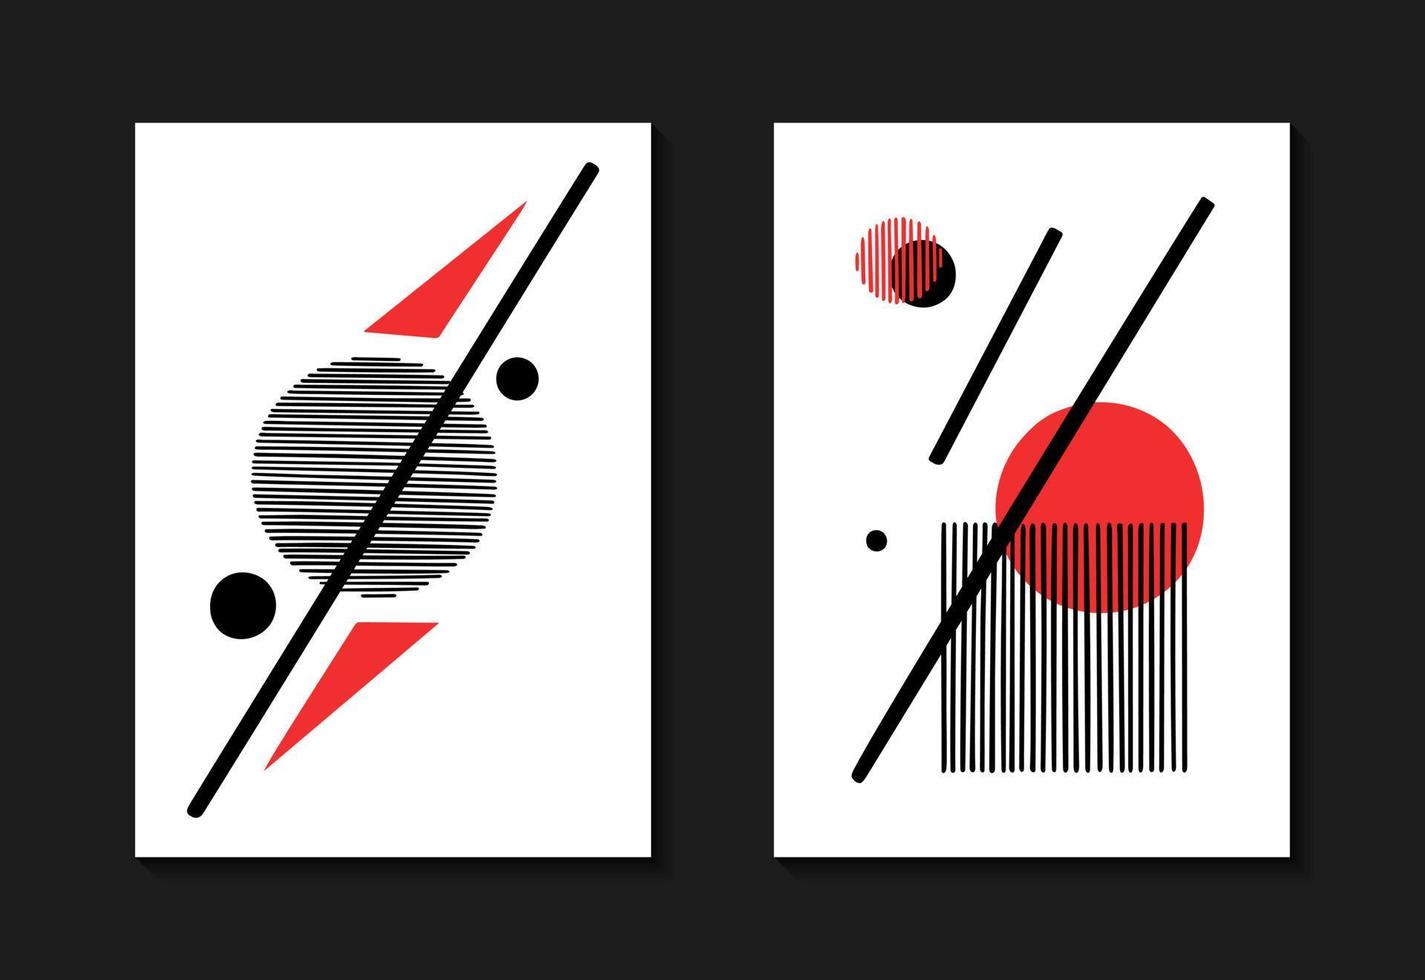 twee poster sjabloon met meetkundig samenstelling in rood en zwart kleuren. vector illustratie constructivisme stijl. ontwerp voor interieur decor, flyers of omslag.